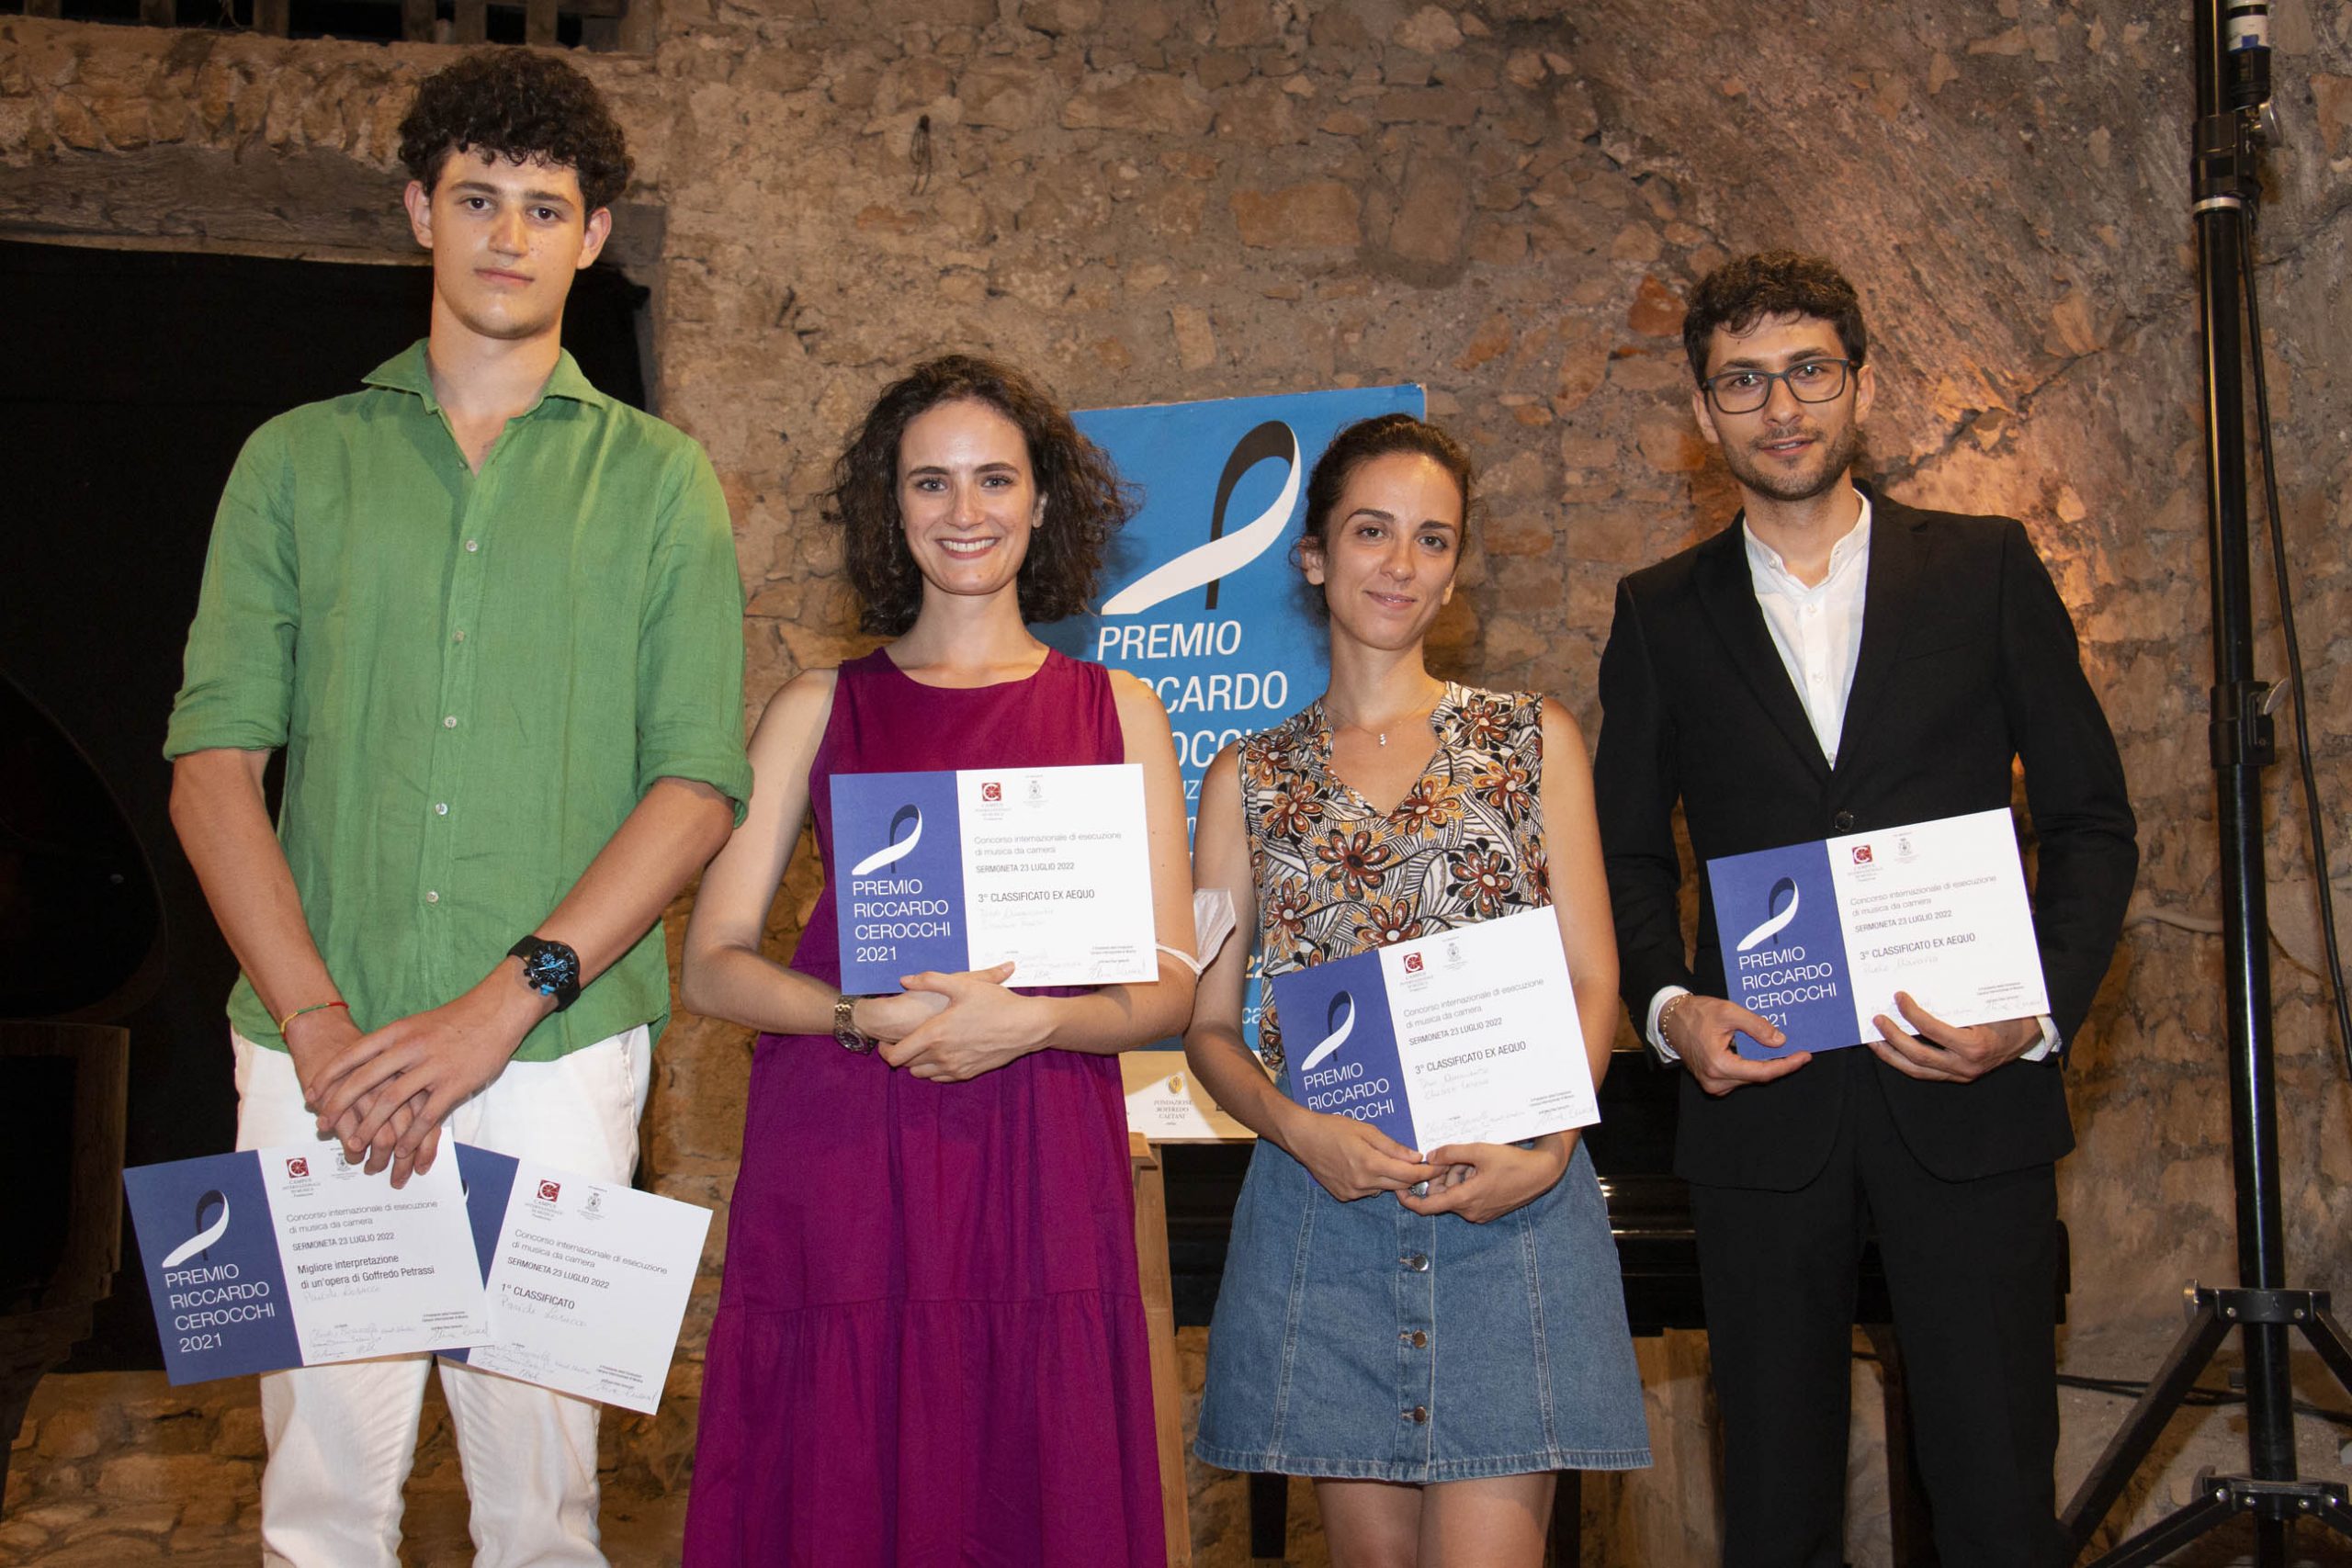 Premiazione-Premio-Riccardo-Cerocchi_c-Matteo-Cassoni-scaled